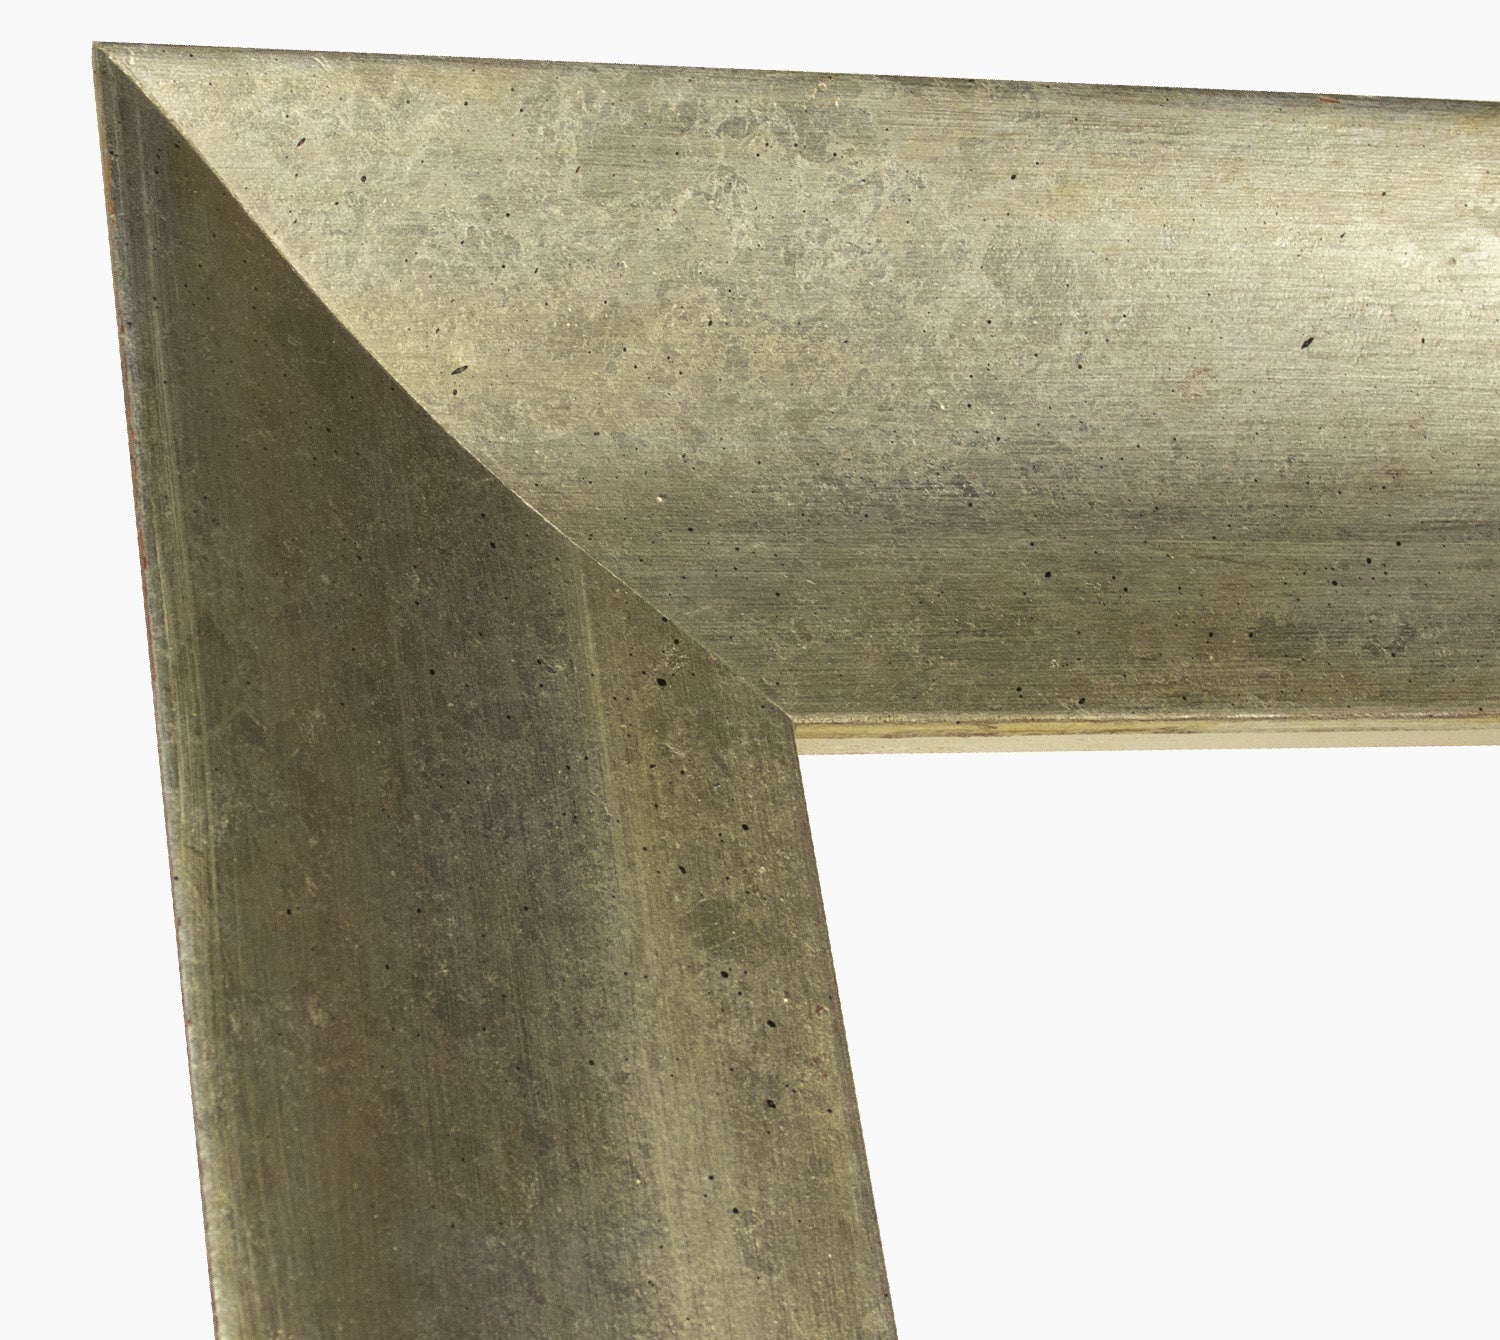 449.011 cadre en bois à la feuille d'argent mesure de profil 100x50 mm Lombarda cornici S.n.c.